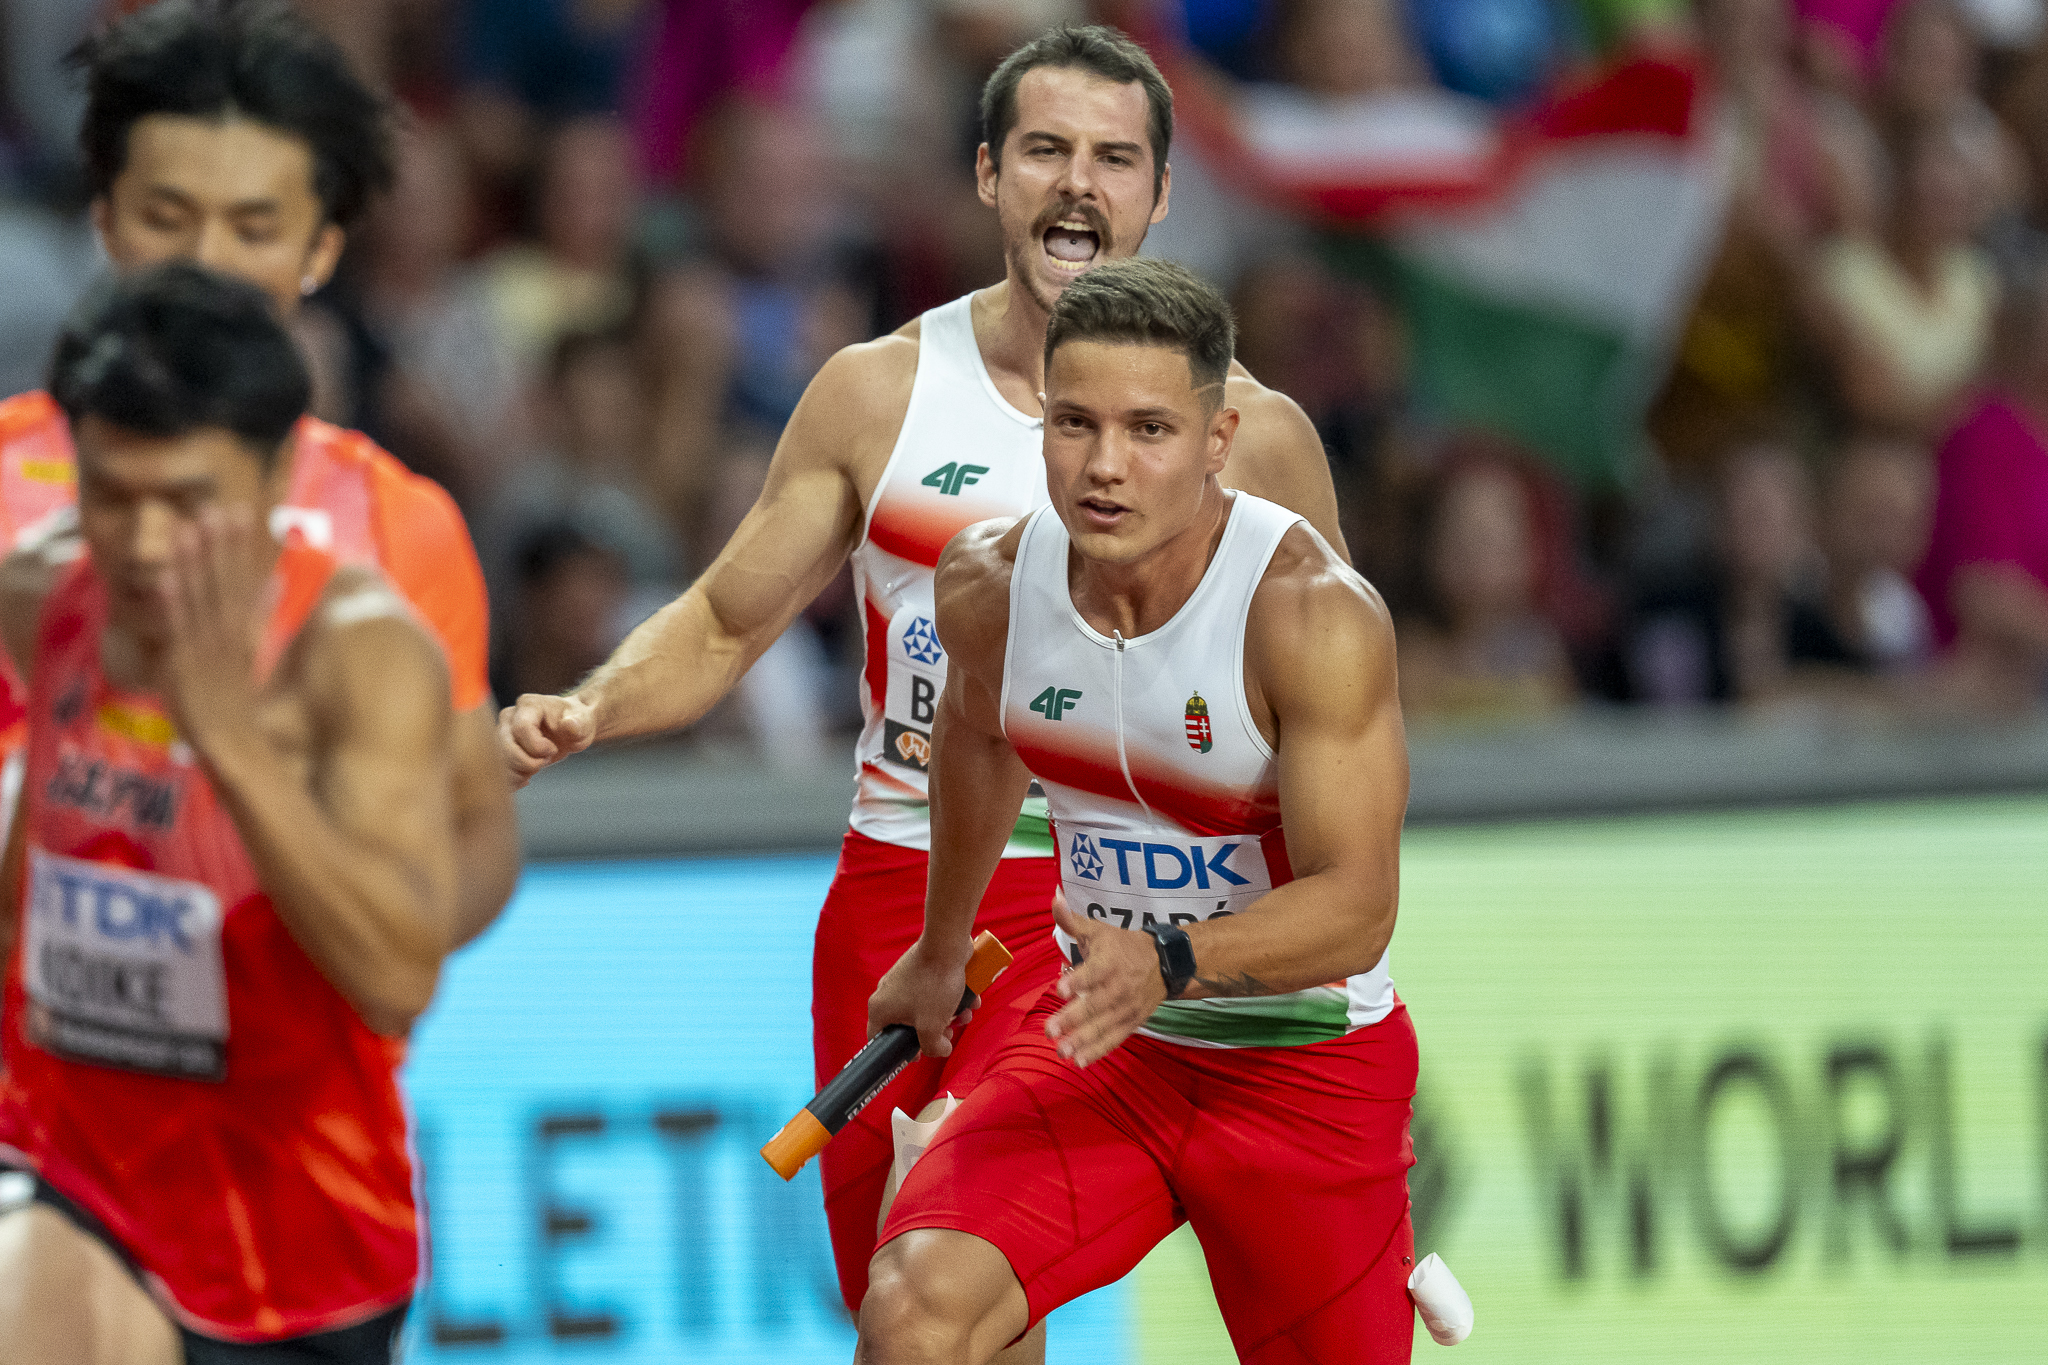 Az atlétikai VB-n Szabó Dániel a 13. helyen zárt a 4x100 méteres váltóval